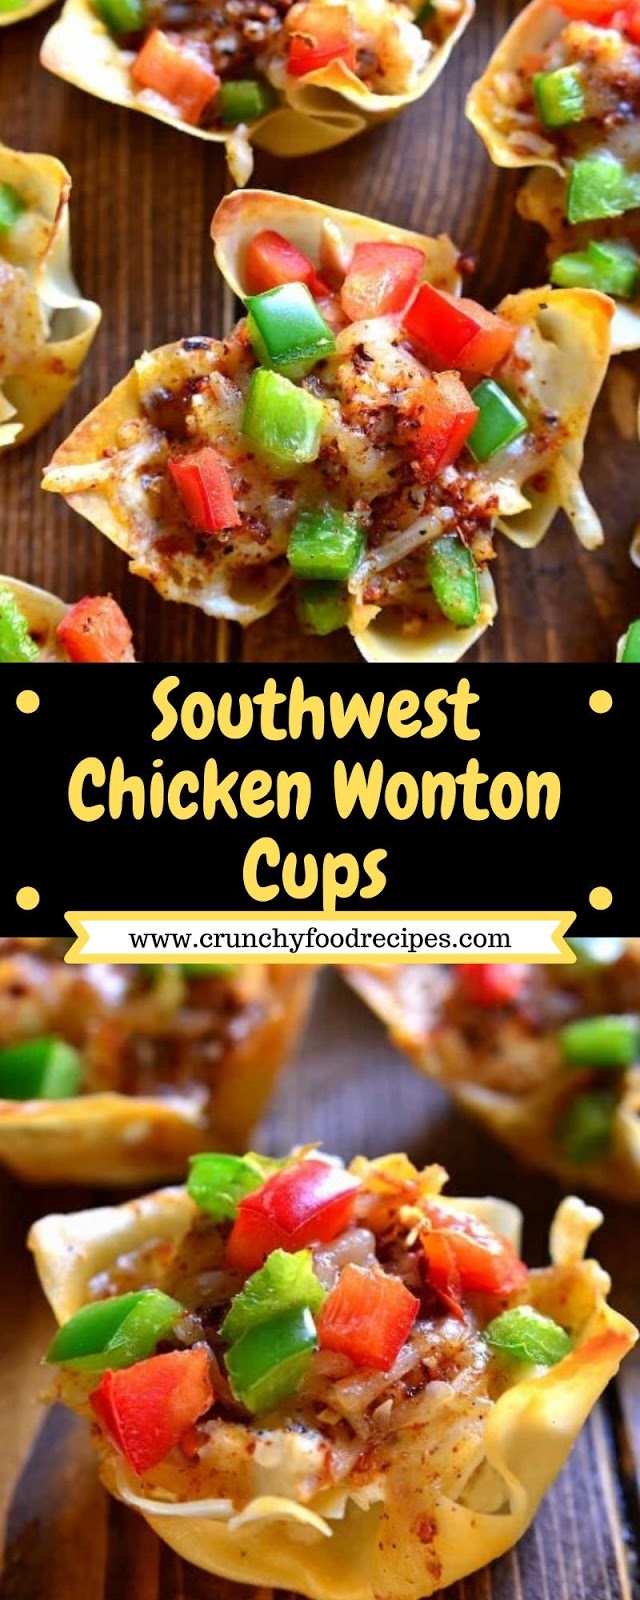 Southwest Chicken Wonton Cups